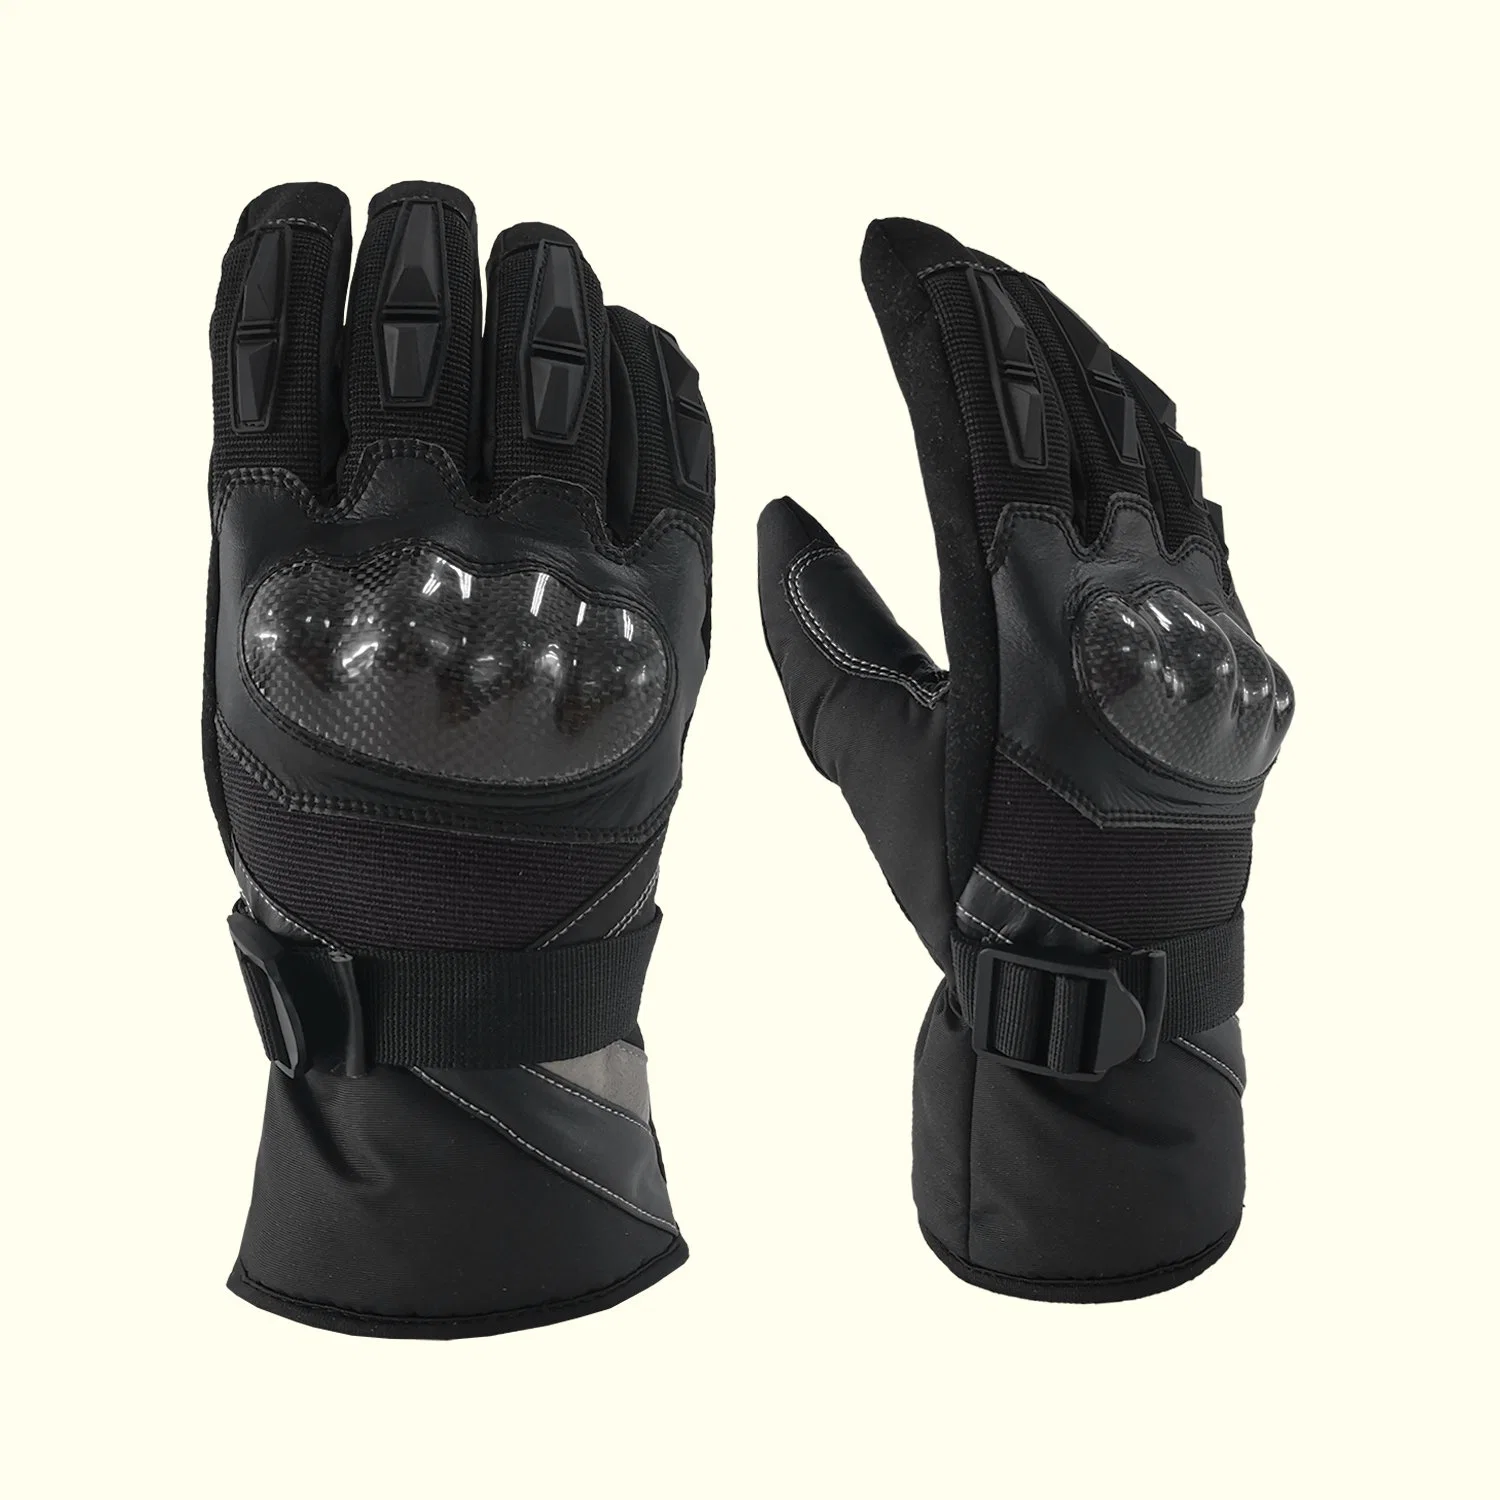 Hiver chaud Sport extérieur Motorcyclisme gants de course protection contre les chocs étanche